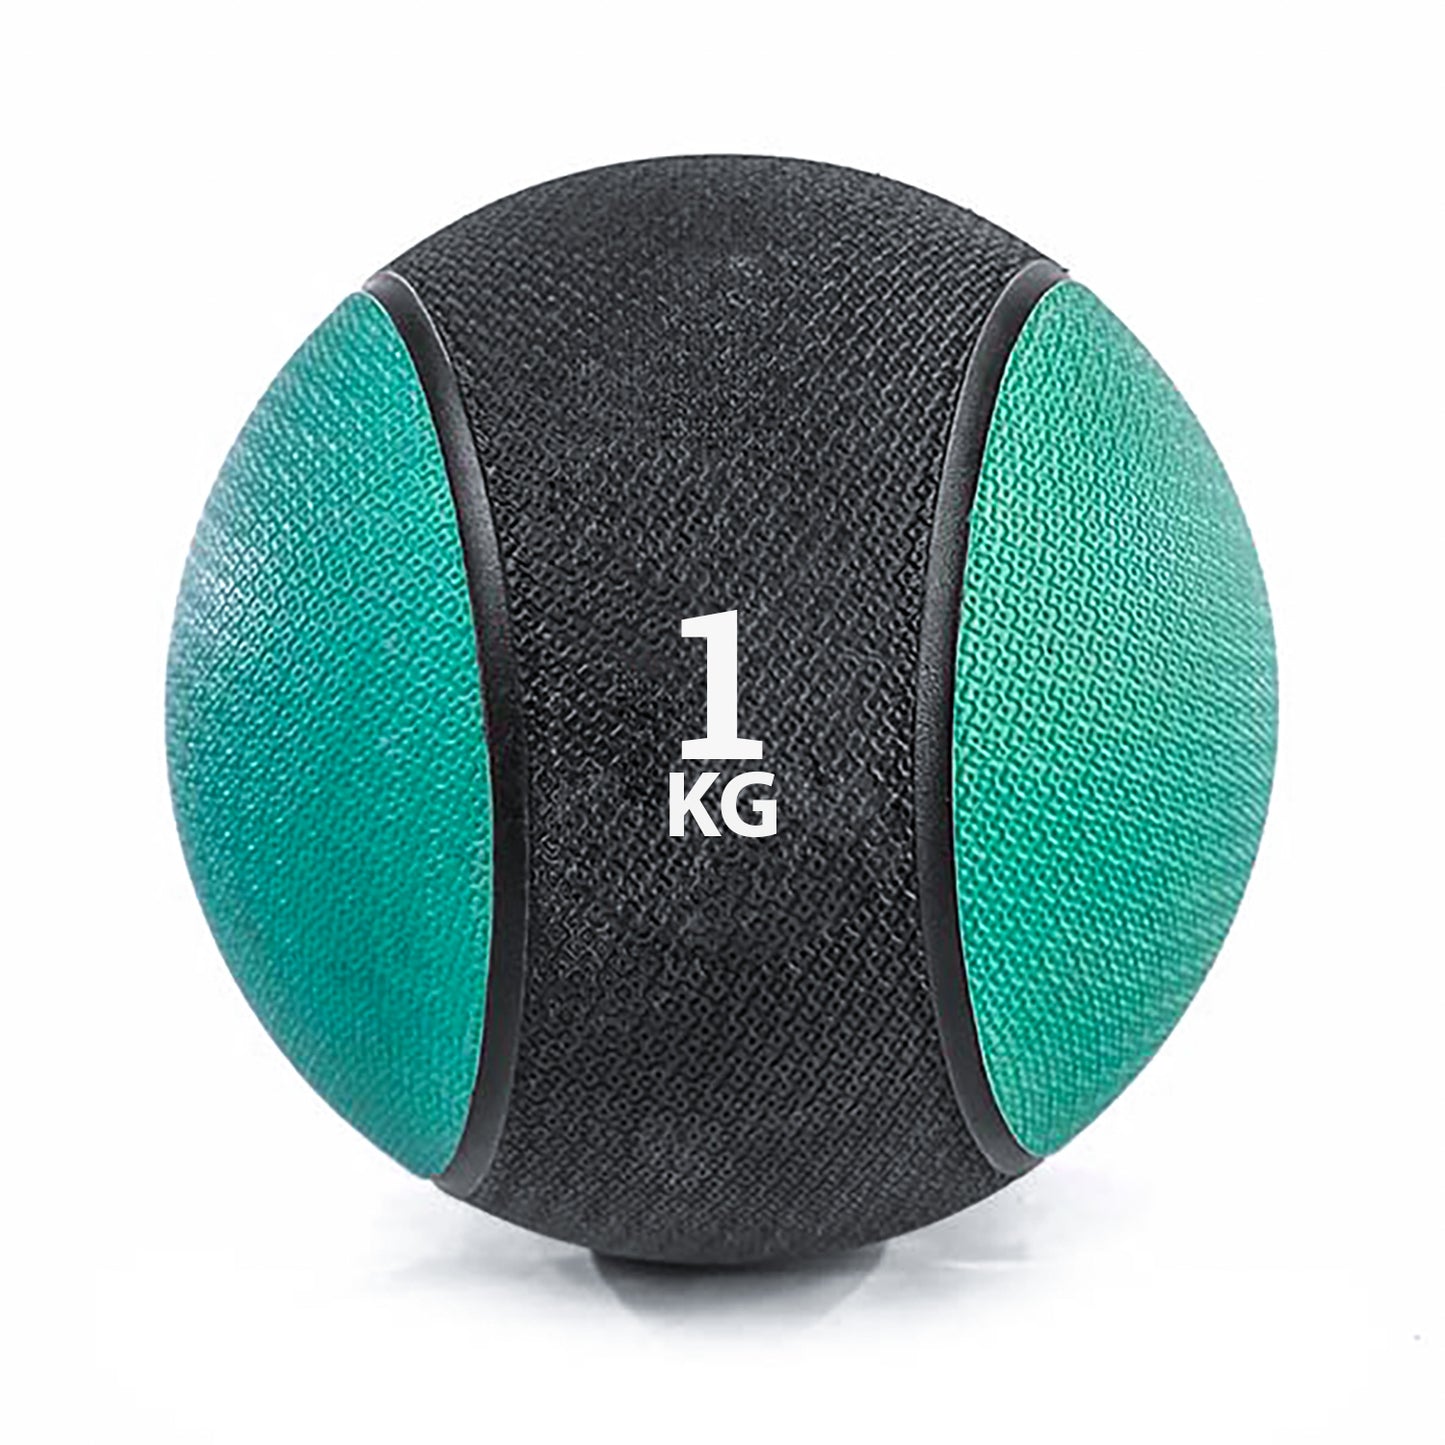 كرة طبية من المطاط لاعادة التأهيل و اللياقة البدنية - لون اسود و اخضر - وزن 1 كيلو جرام